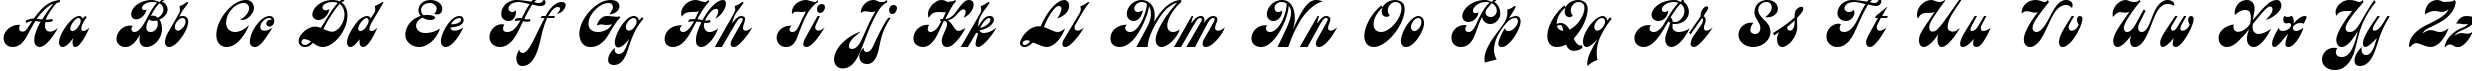 Пример написания английского алфавита шрифтом Astron Cyrillic